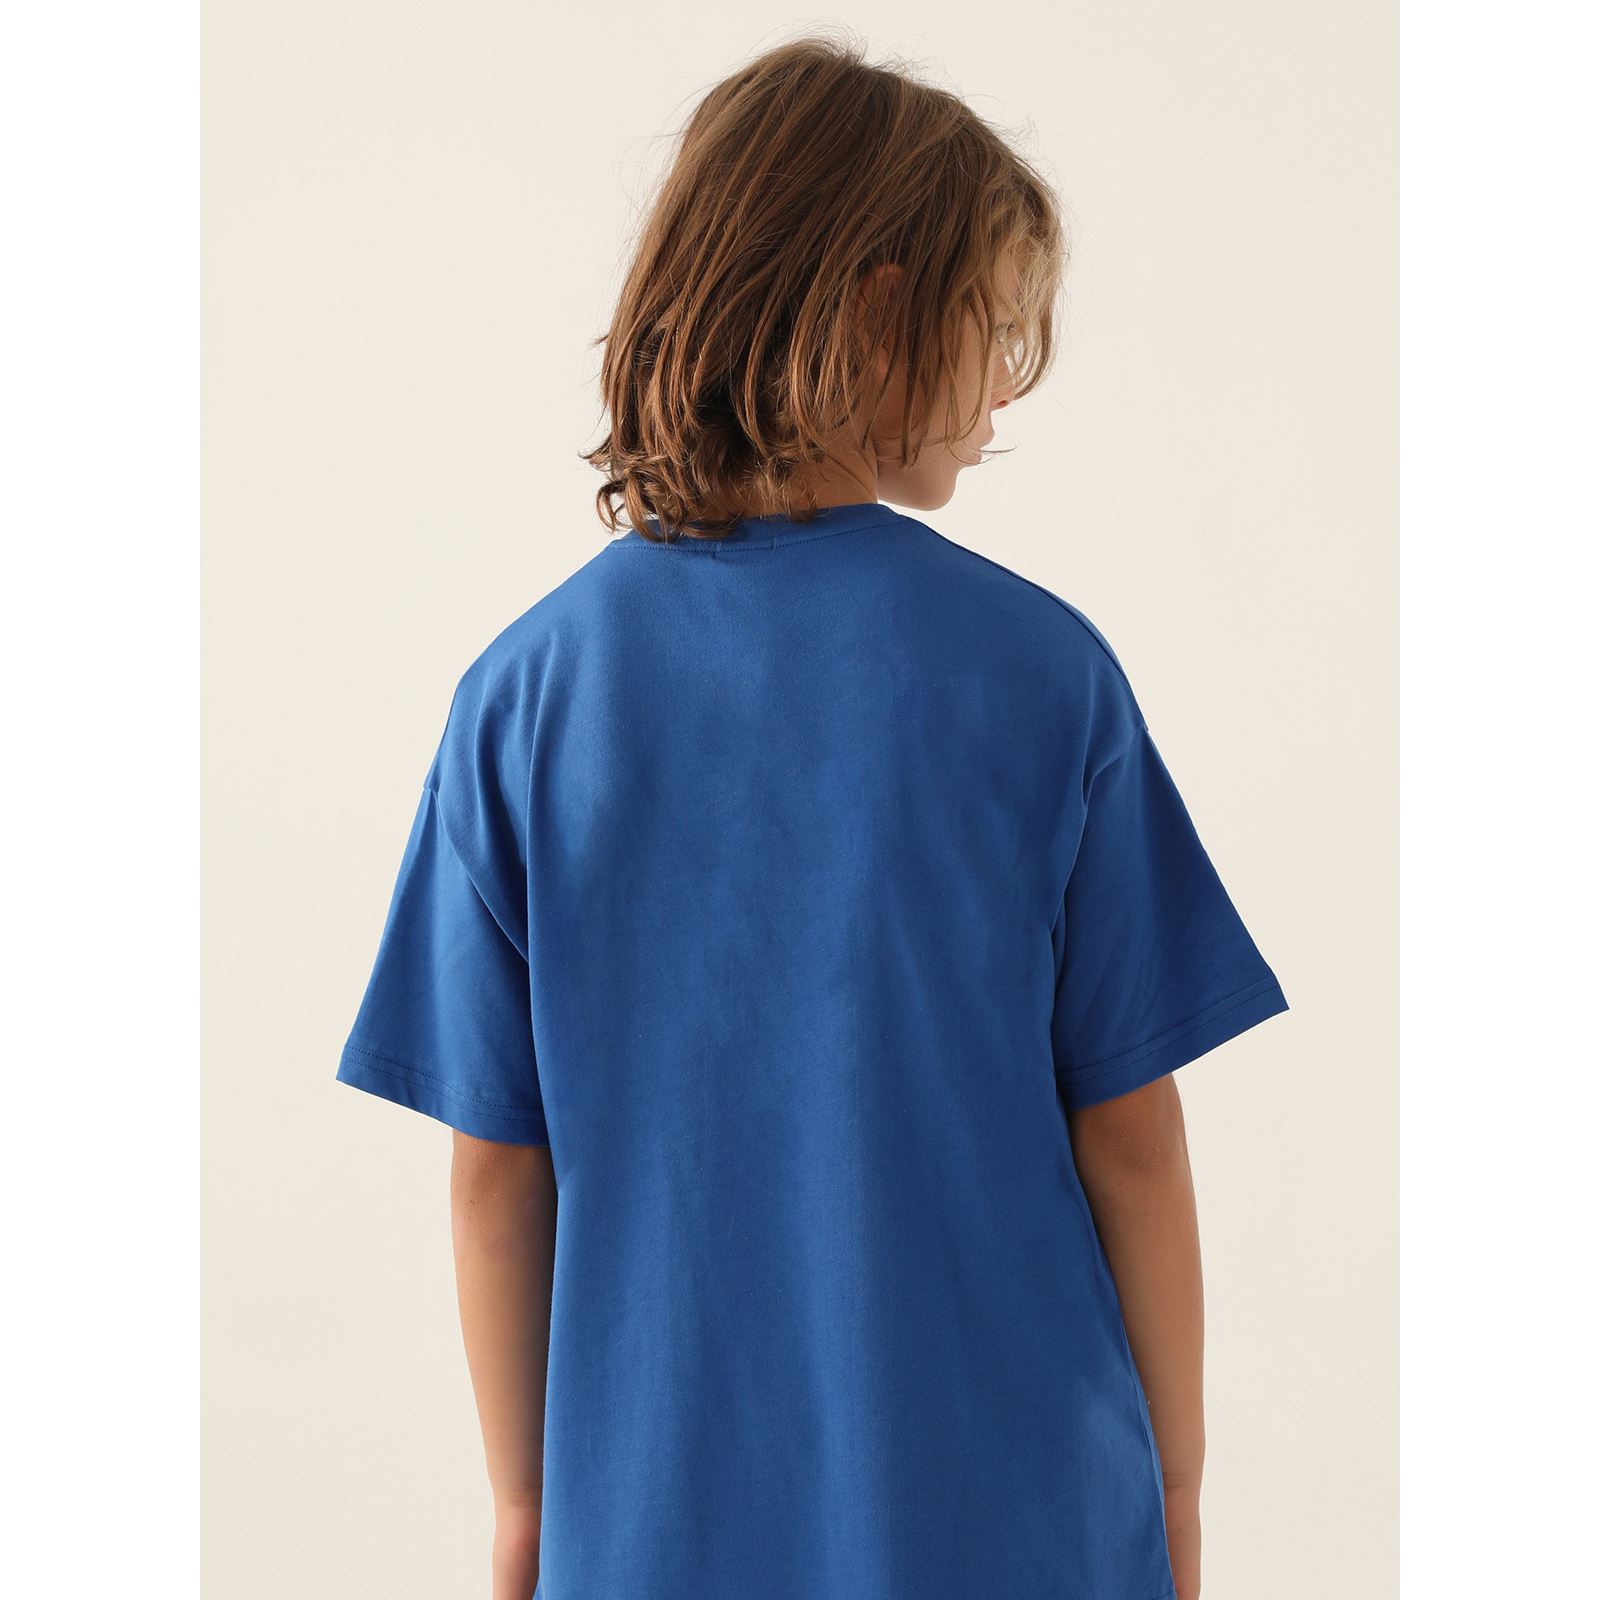 Kappa Erkek Çocuk Tişört 5-15 Yaş Mavi